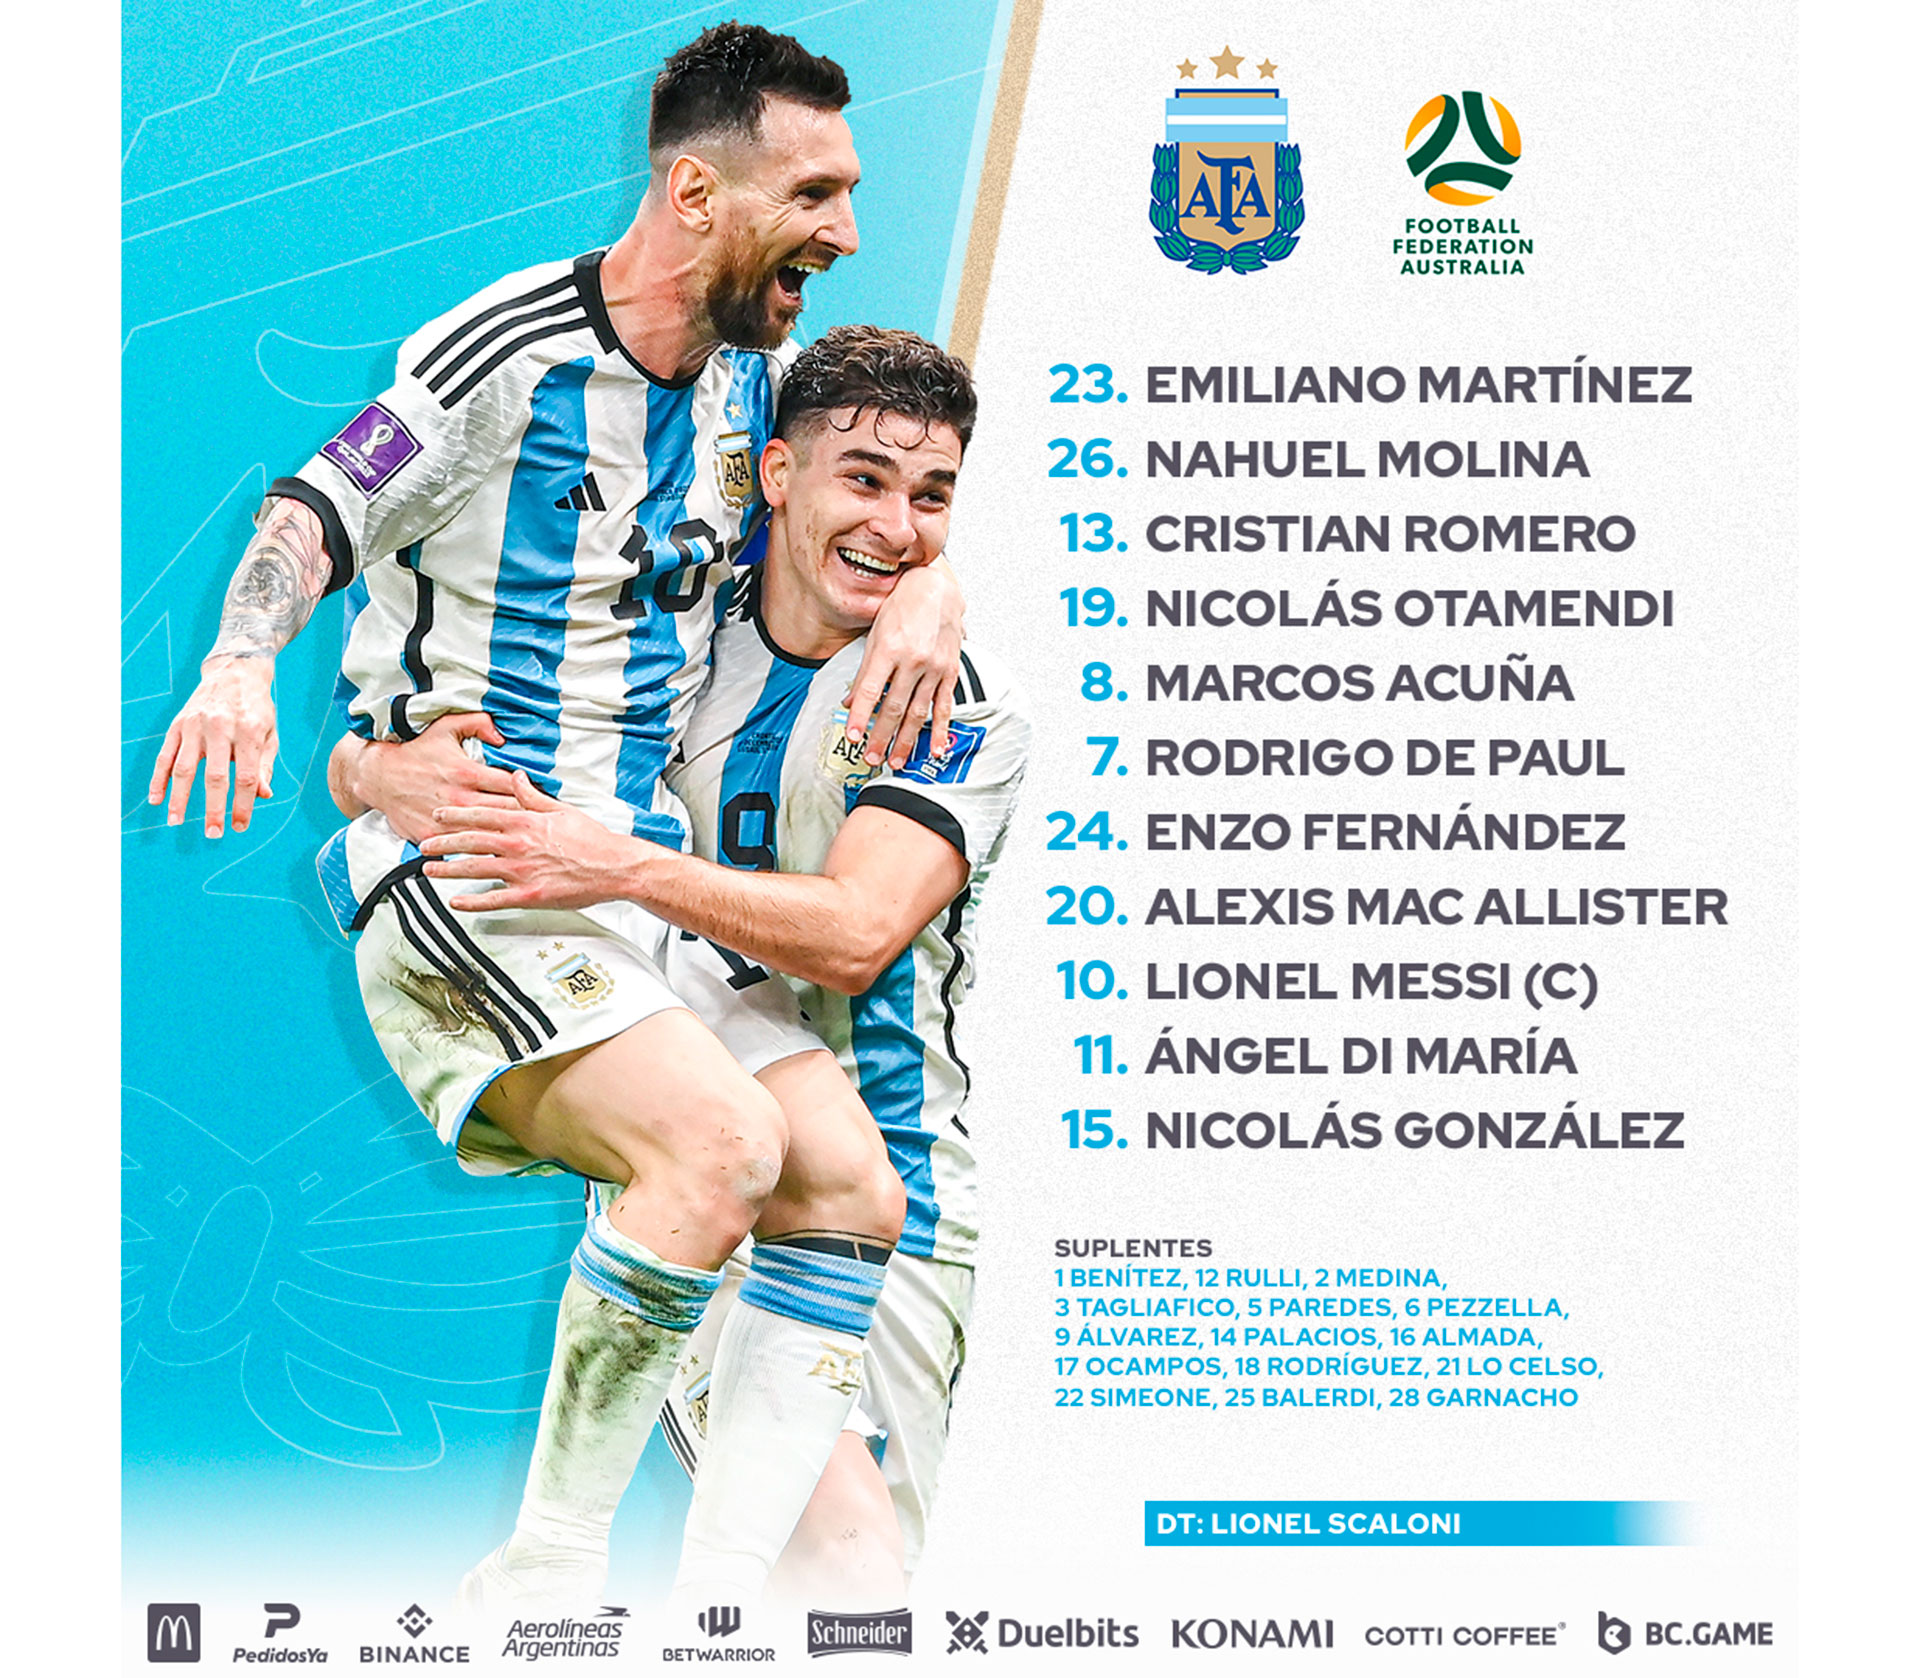 La placa con los jugadores de Argentina ante Australia